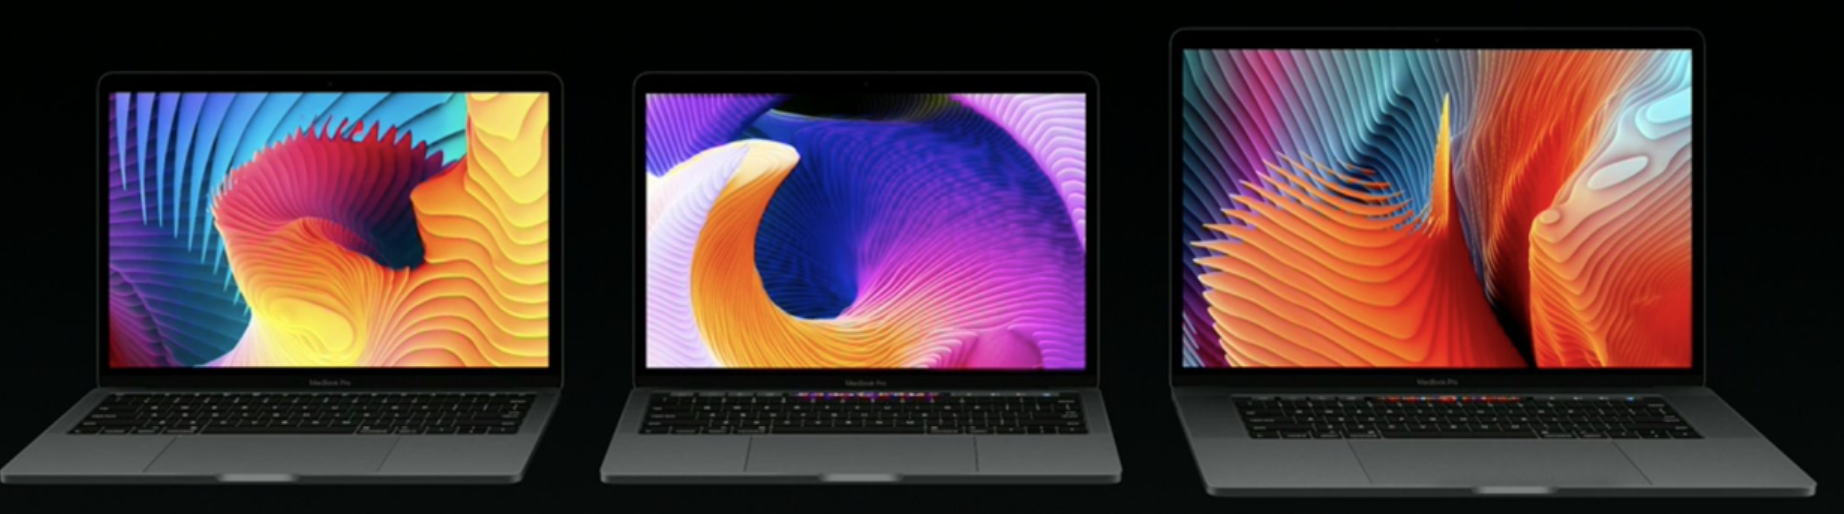 맥북 프로 벽지,노트북,화면,출력 장치,과학 기술,디스플레이 장치